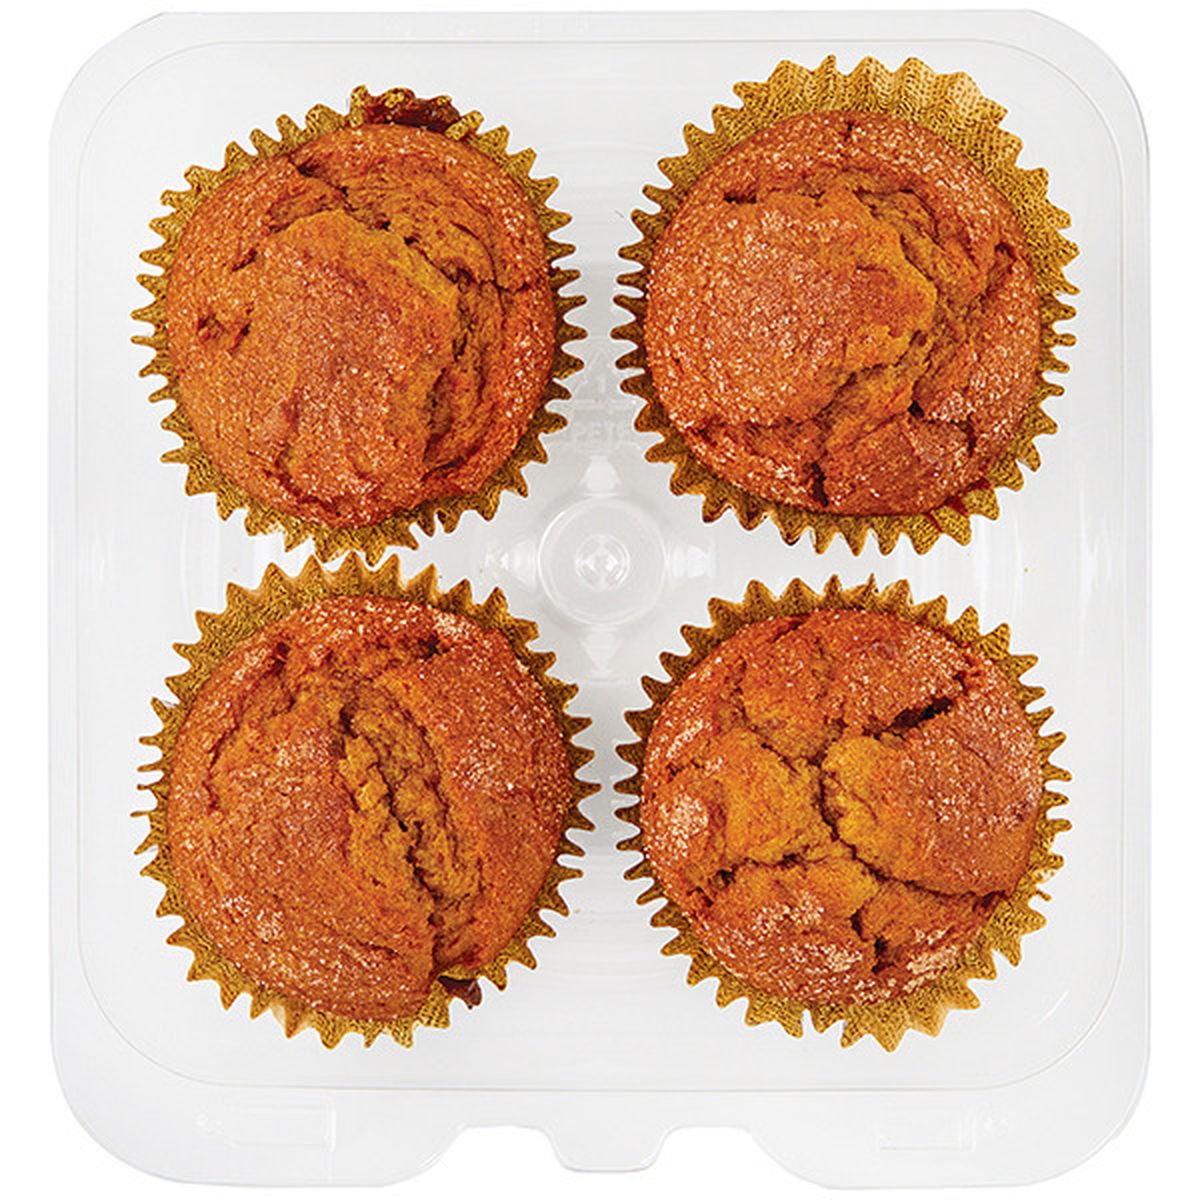 Calories in Wegmans Muffins, Pumpkin, 4 Pack